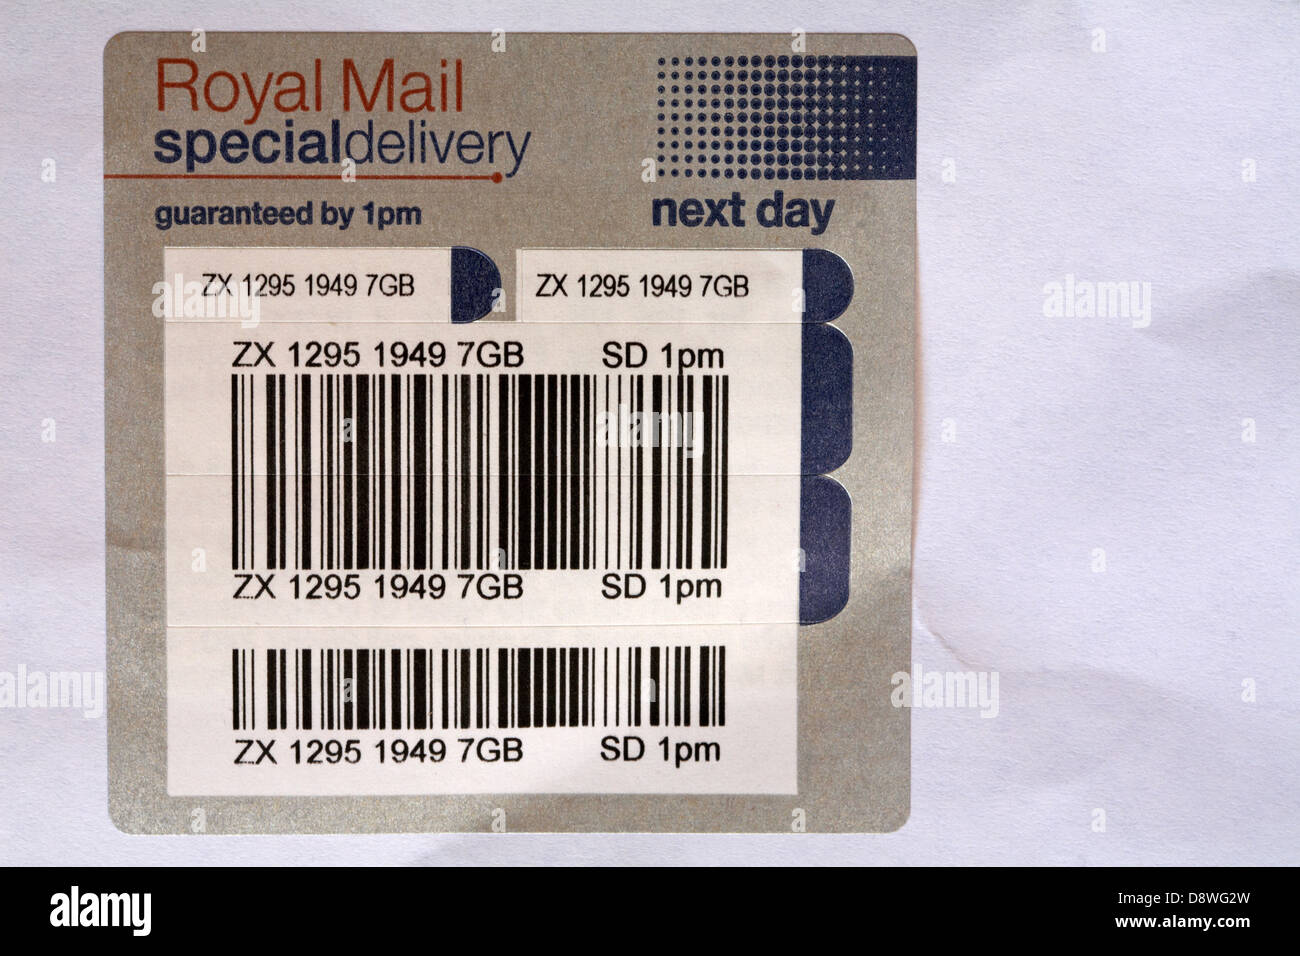 Autocollant de livraison spéciale Royal Mail sur enveloppe blanche Banque D'Images